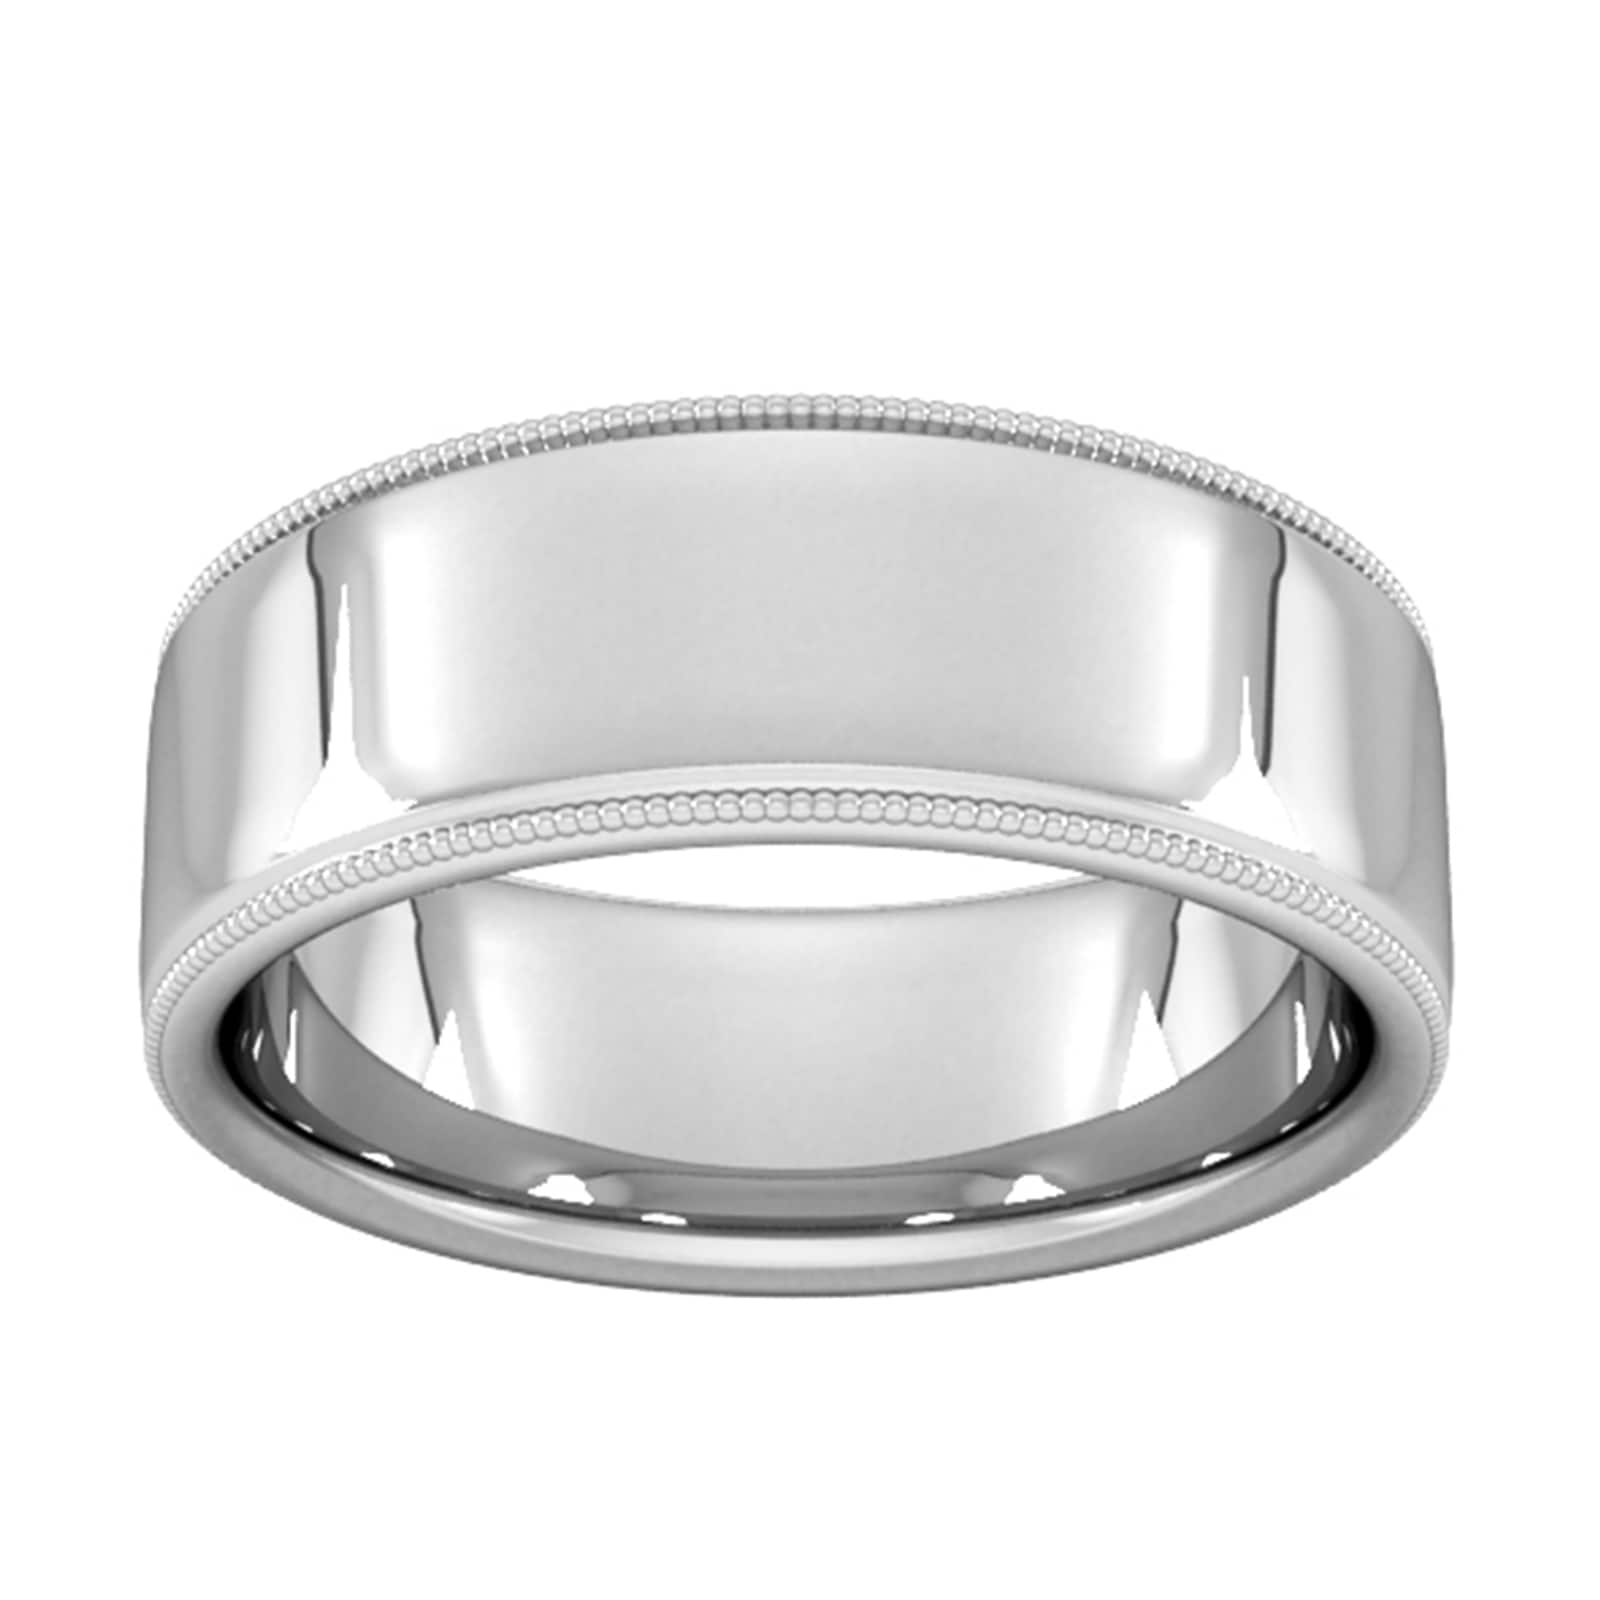 8mm Slight Court Standard Milgrain Edge Wedding Ring In 9 Carat White Gold - Ring Size R